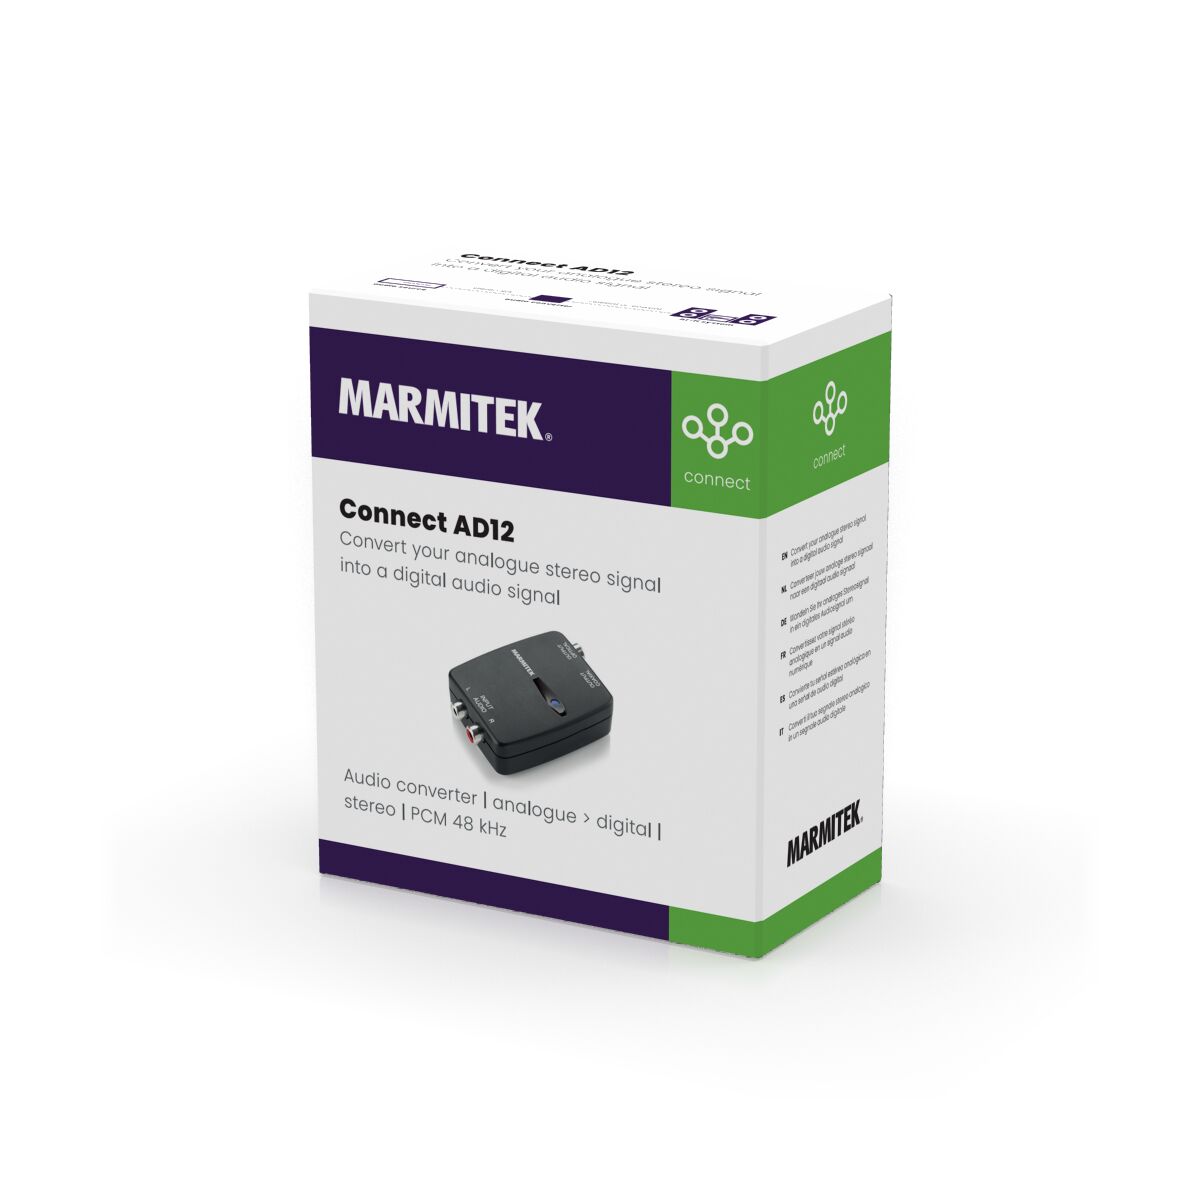 Connect AD12 - Audio converter - Analog to digital - 3D Packshot Image | Marmitek